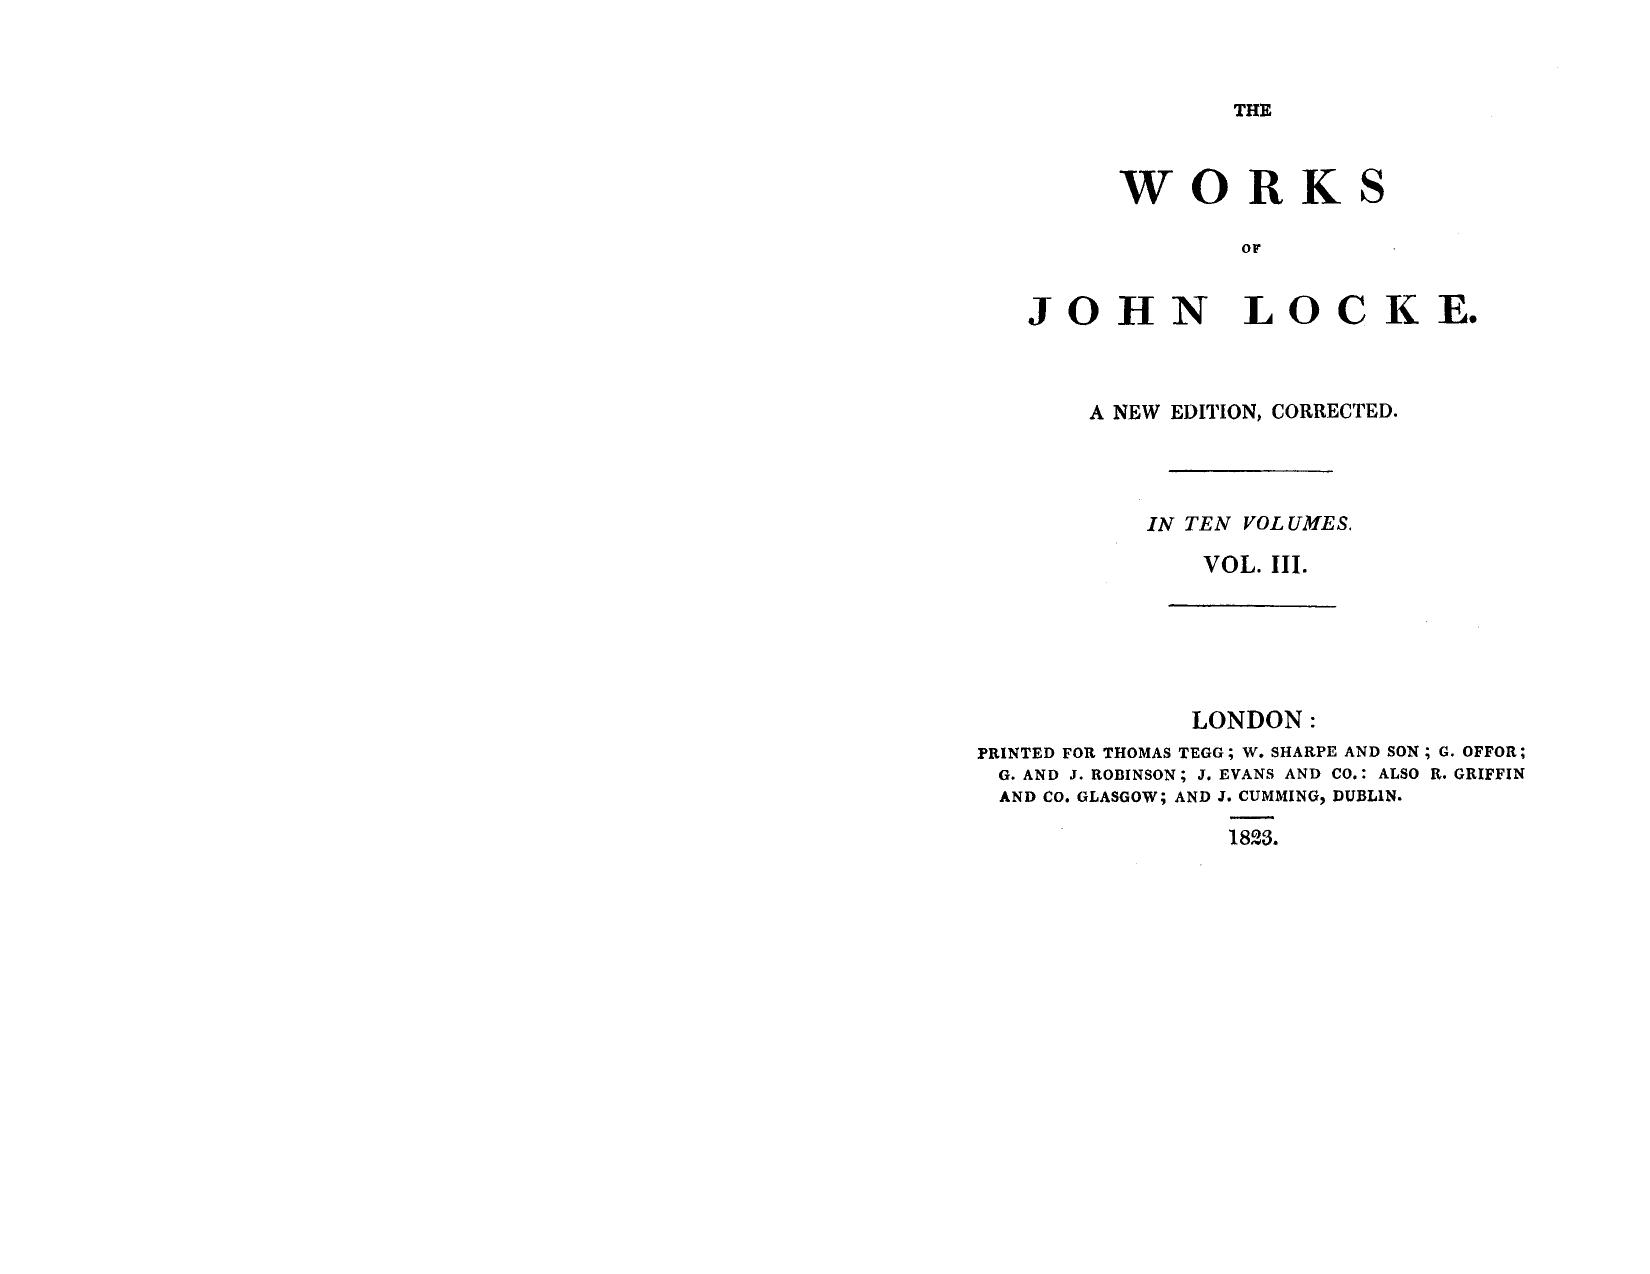 The works of John Locke 03 by John Locke